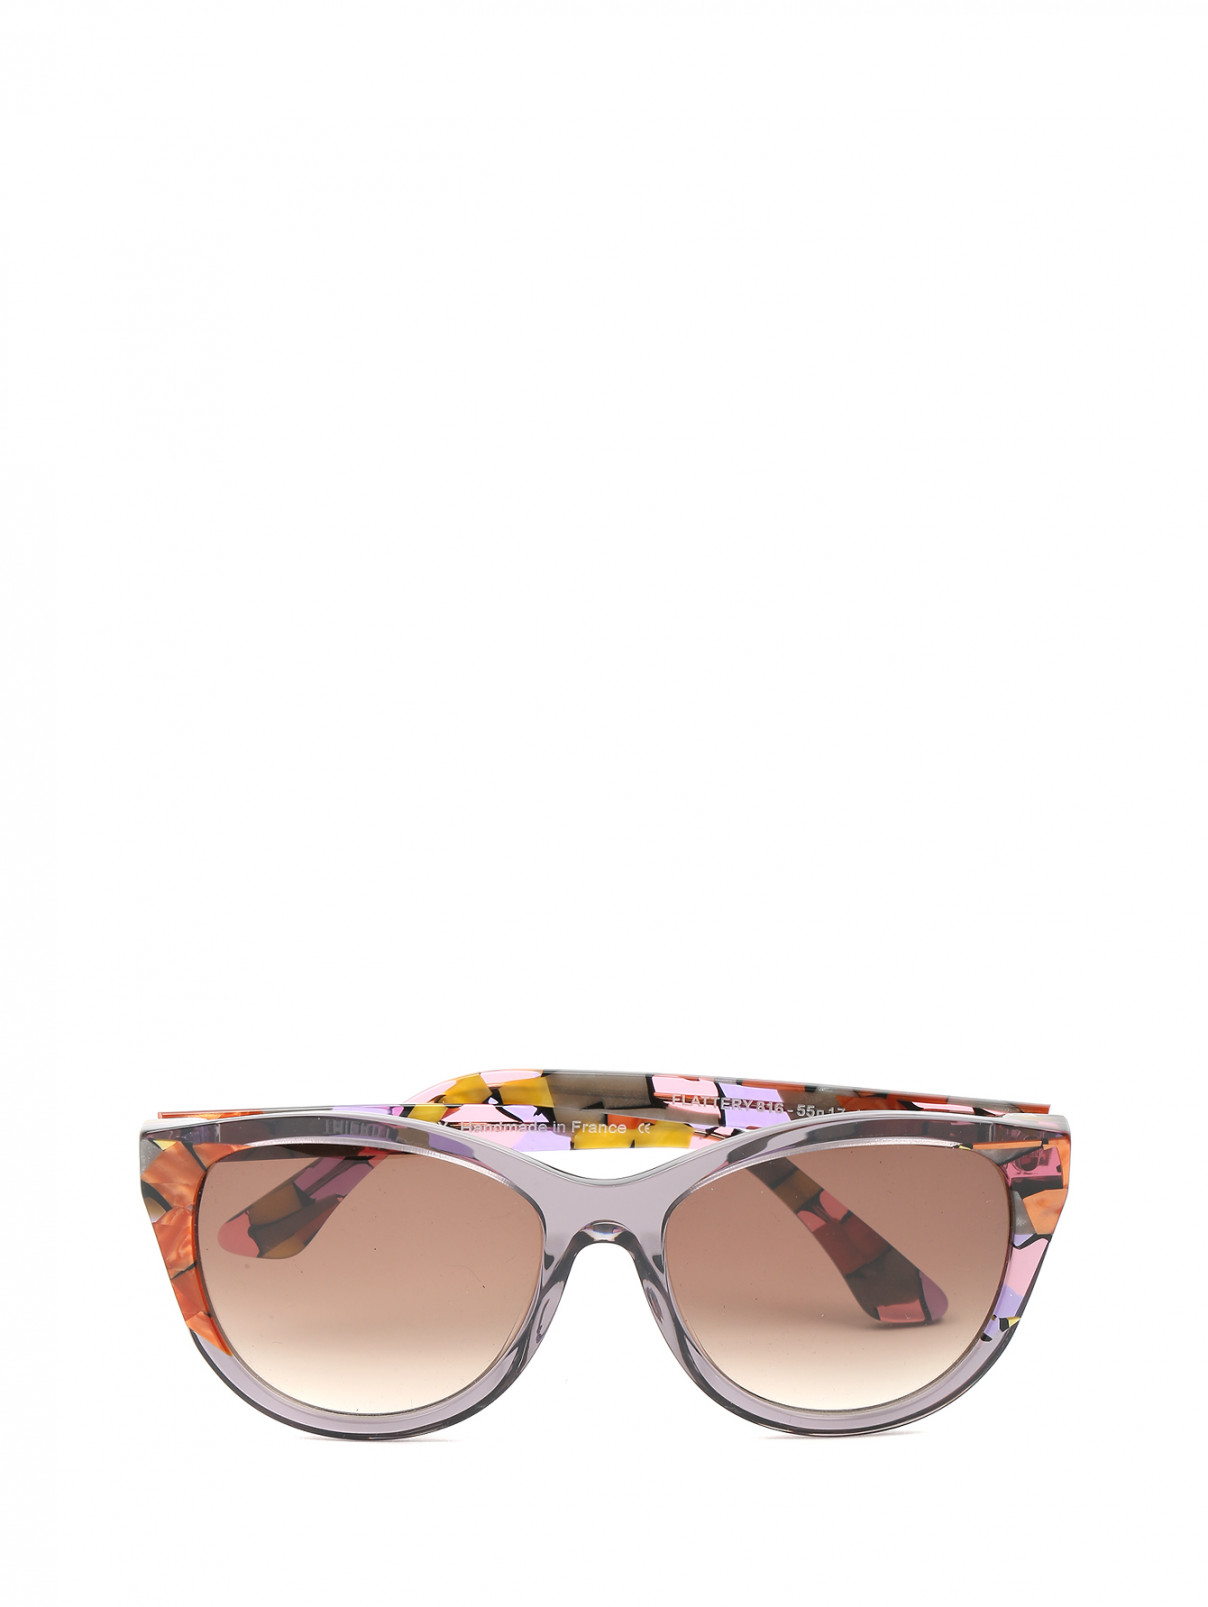 Cолнцезащитные очки в оправе из пластика с узором Thierry Lasry  –  Общий вид  – Цвет:  Узор